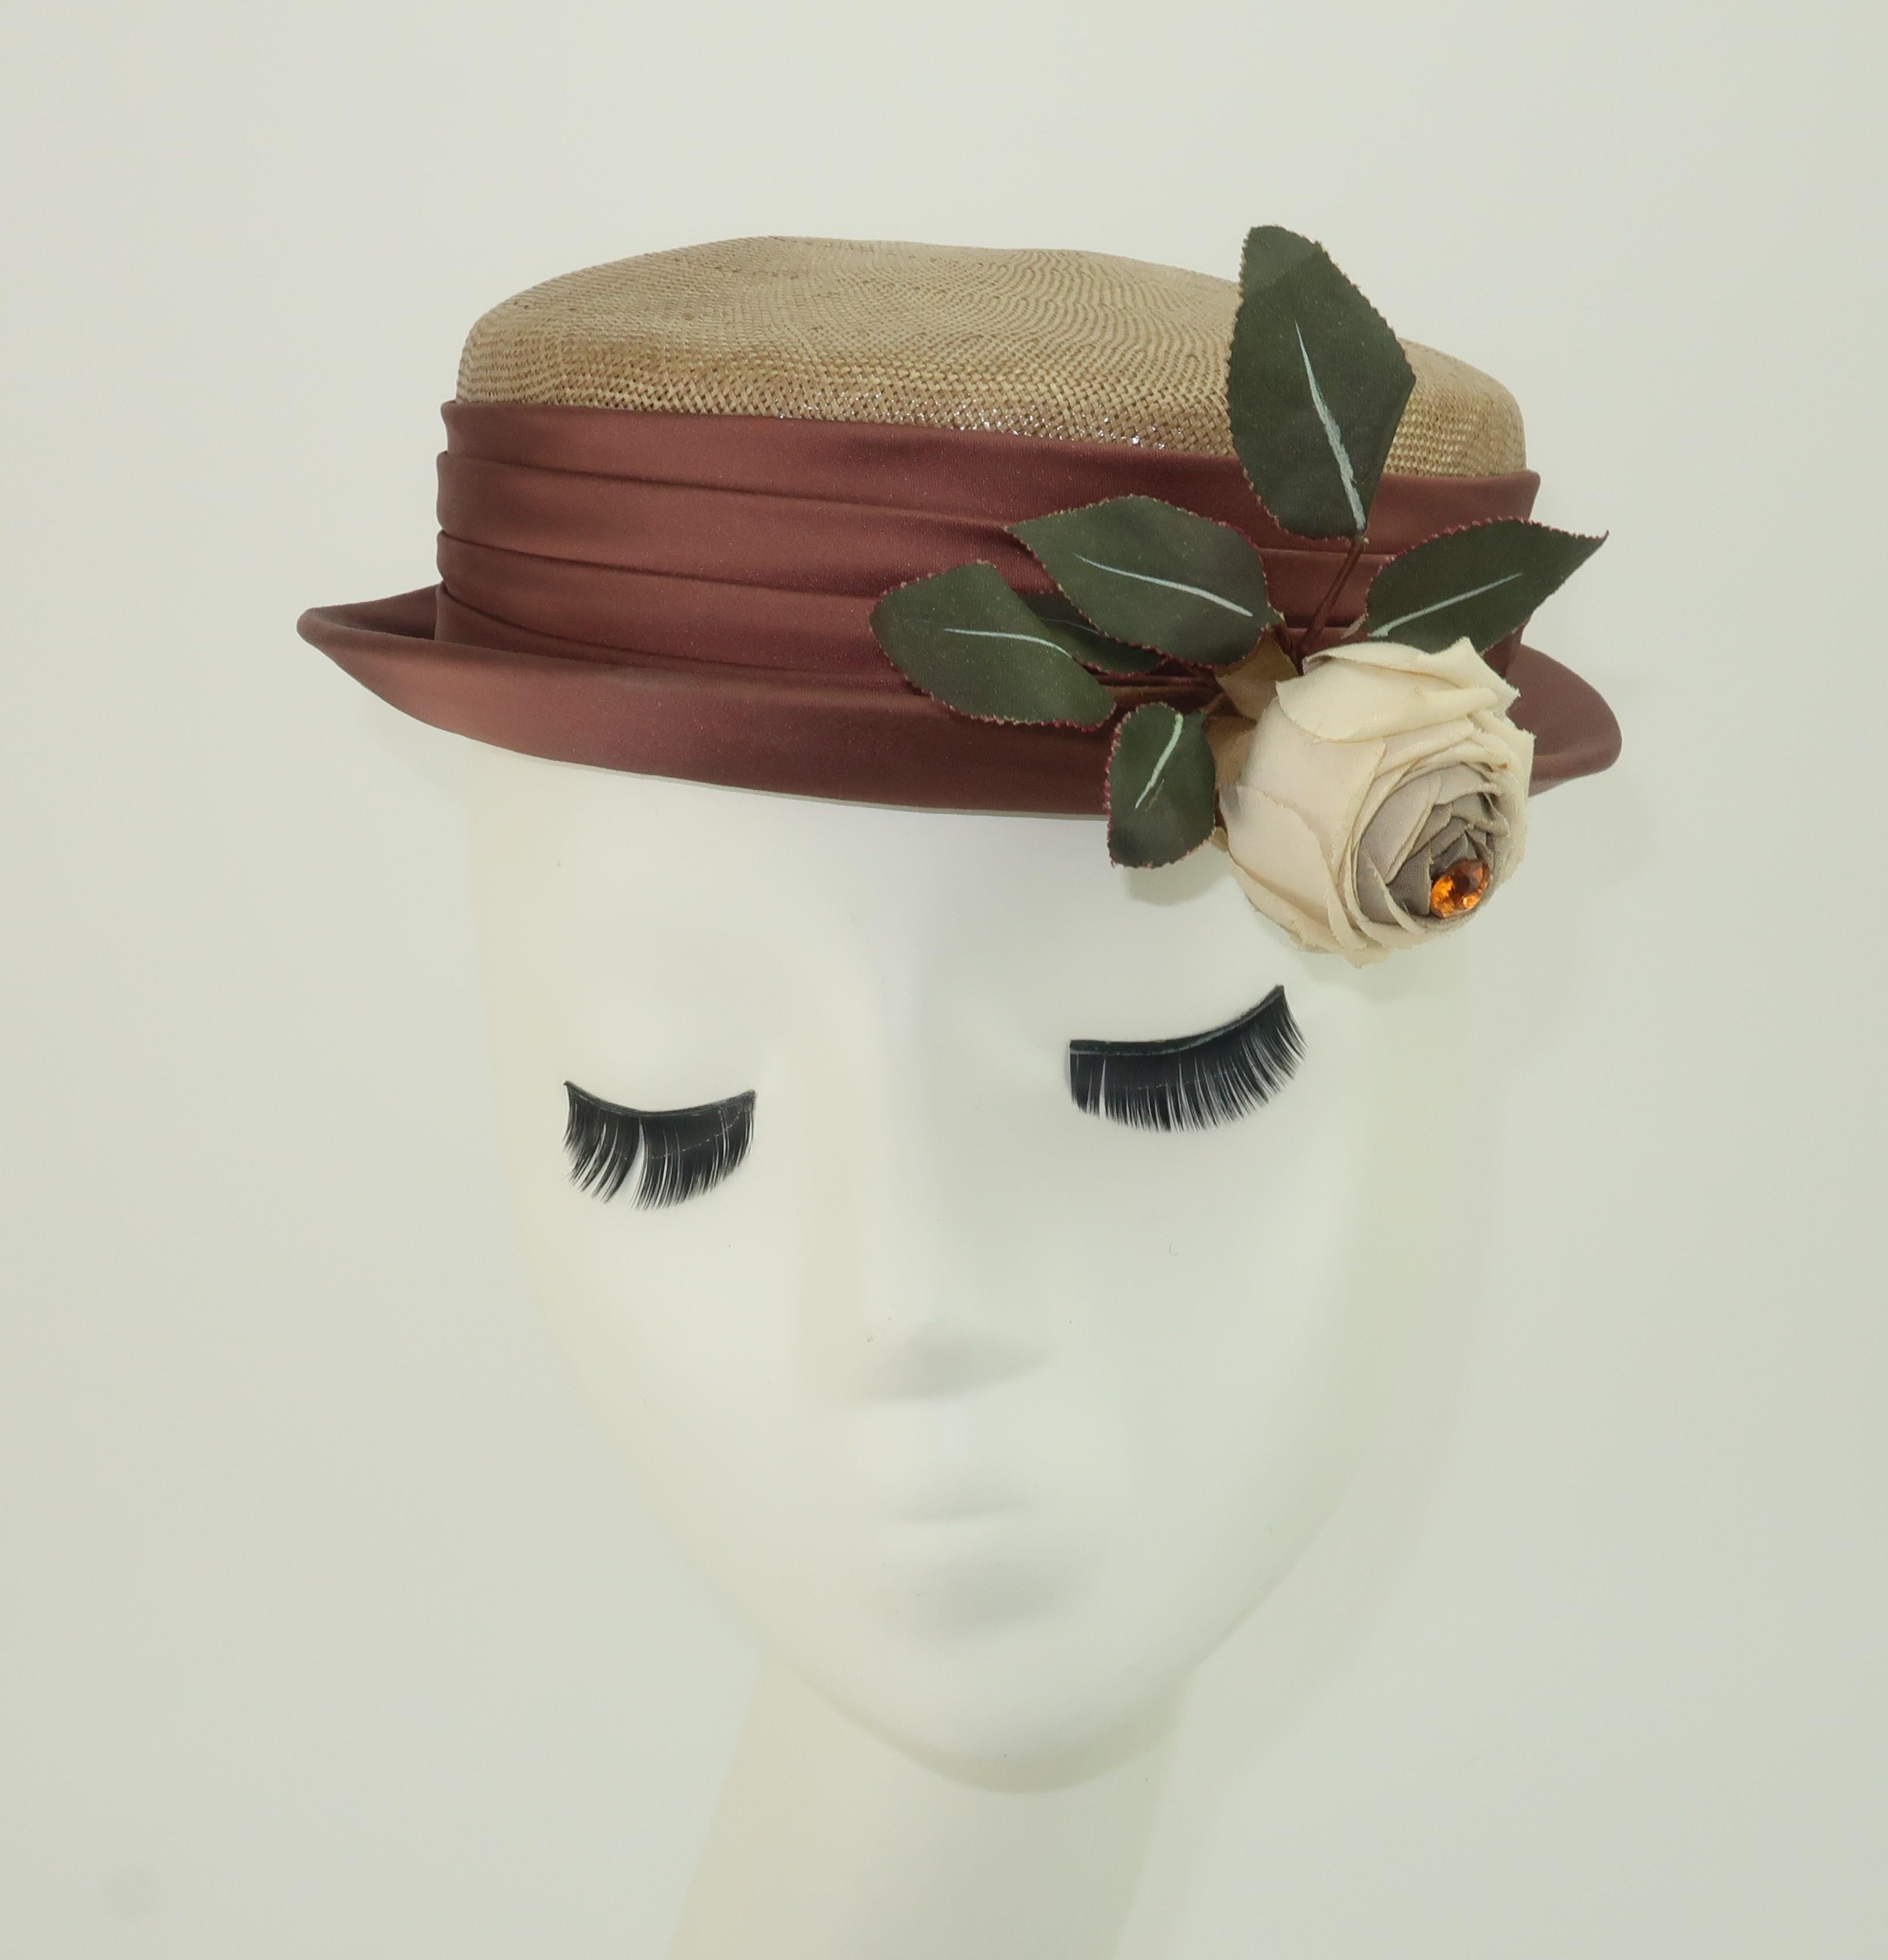 Charmant chapeau de paille des années 1940, de couleur beige ou fauve, avec une bande de satin froncée marron taupe et une rose en soie blanche naturelle ornée d'une pierre d'ambre.  La silhouette du chapeau se situe quelque part entre un canotier